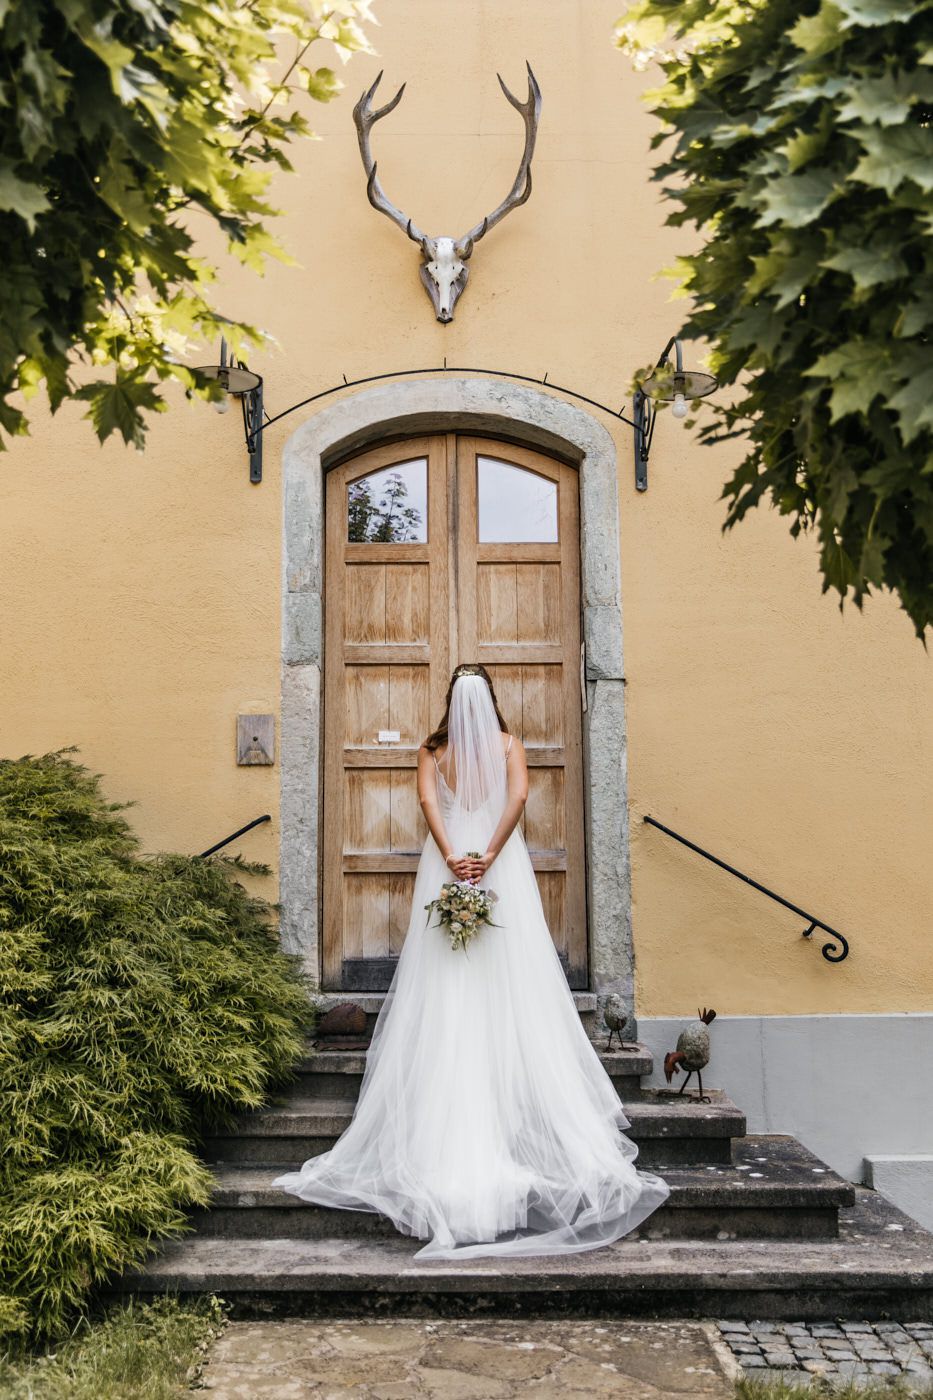 Fotoshooting am Hochzeitstag. Braun steht vor der Tür mit dem Braut Strauß hinterm Rücken.